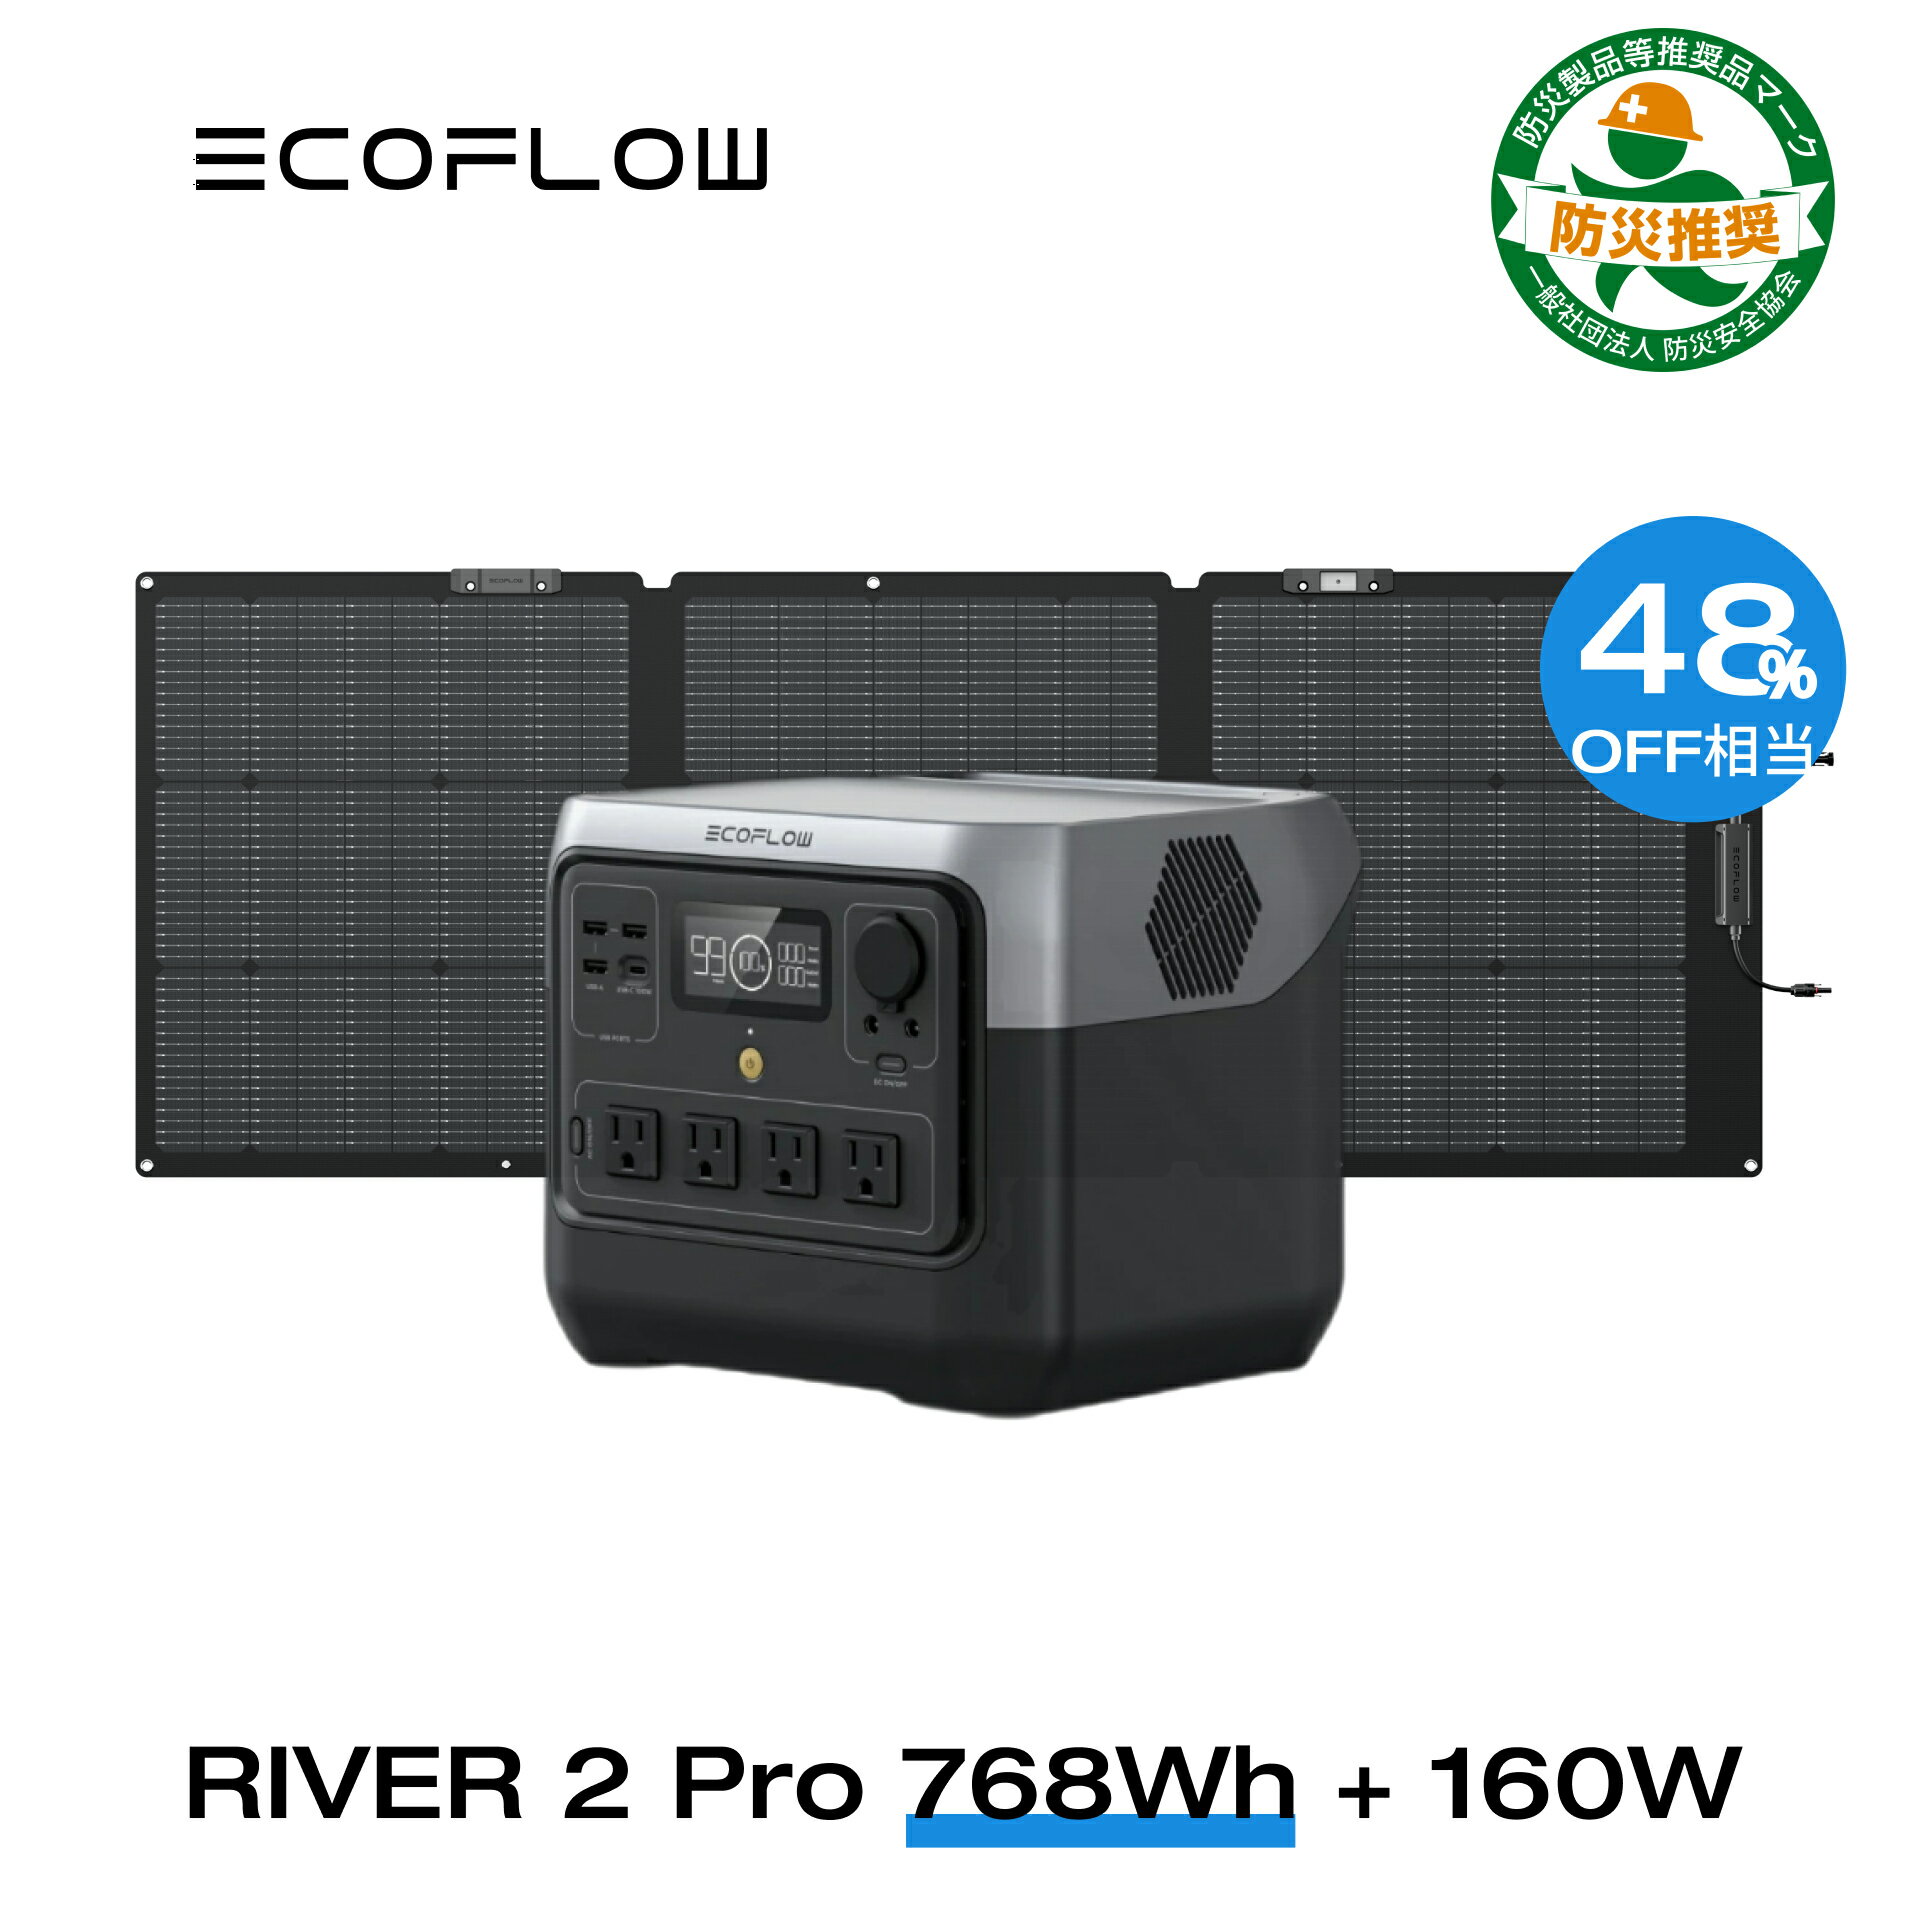 【クーポン併用で64,850円! 6/4 20:00~】EcoFlow RIVER 2 Pro 768Wh + 160W ポータブル電源 ソーラーパネル セット …